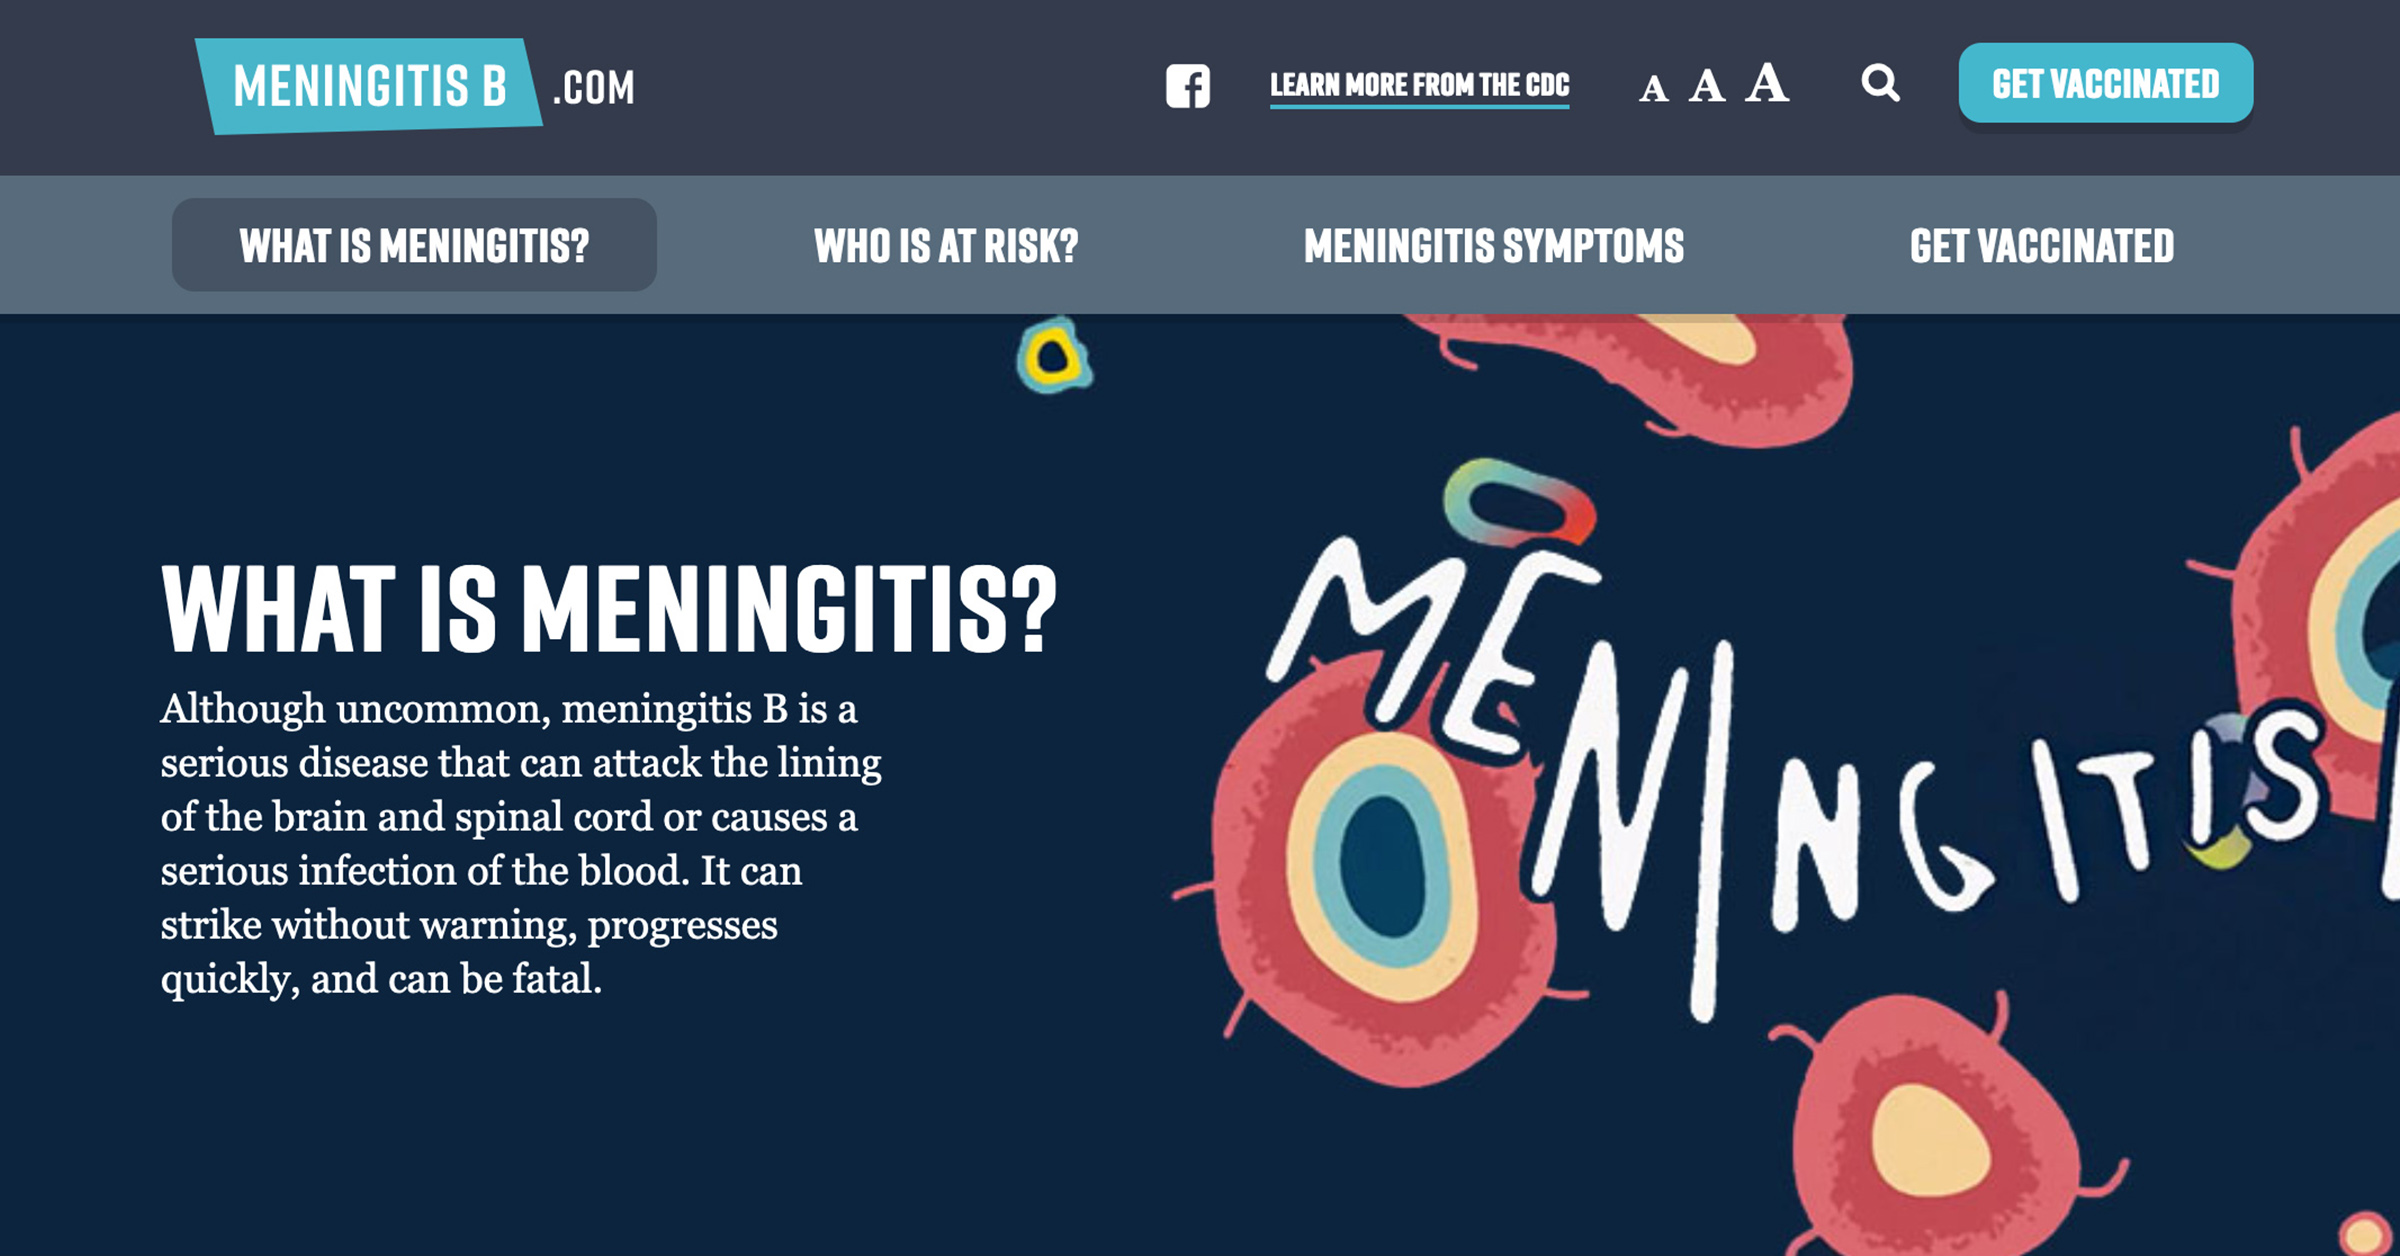 MeningitisB.com